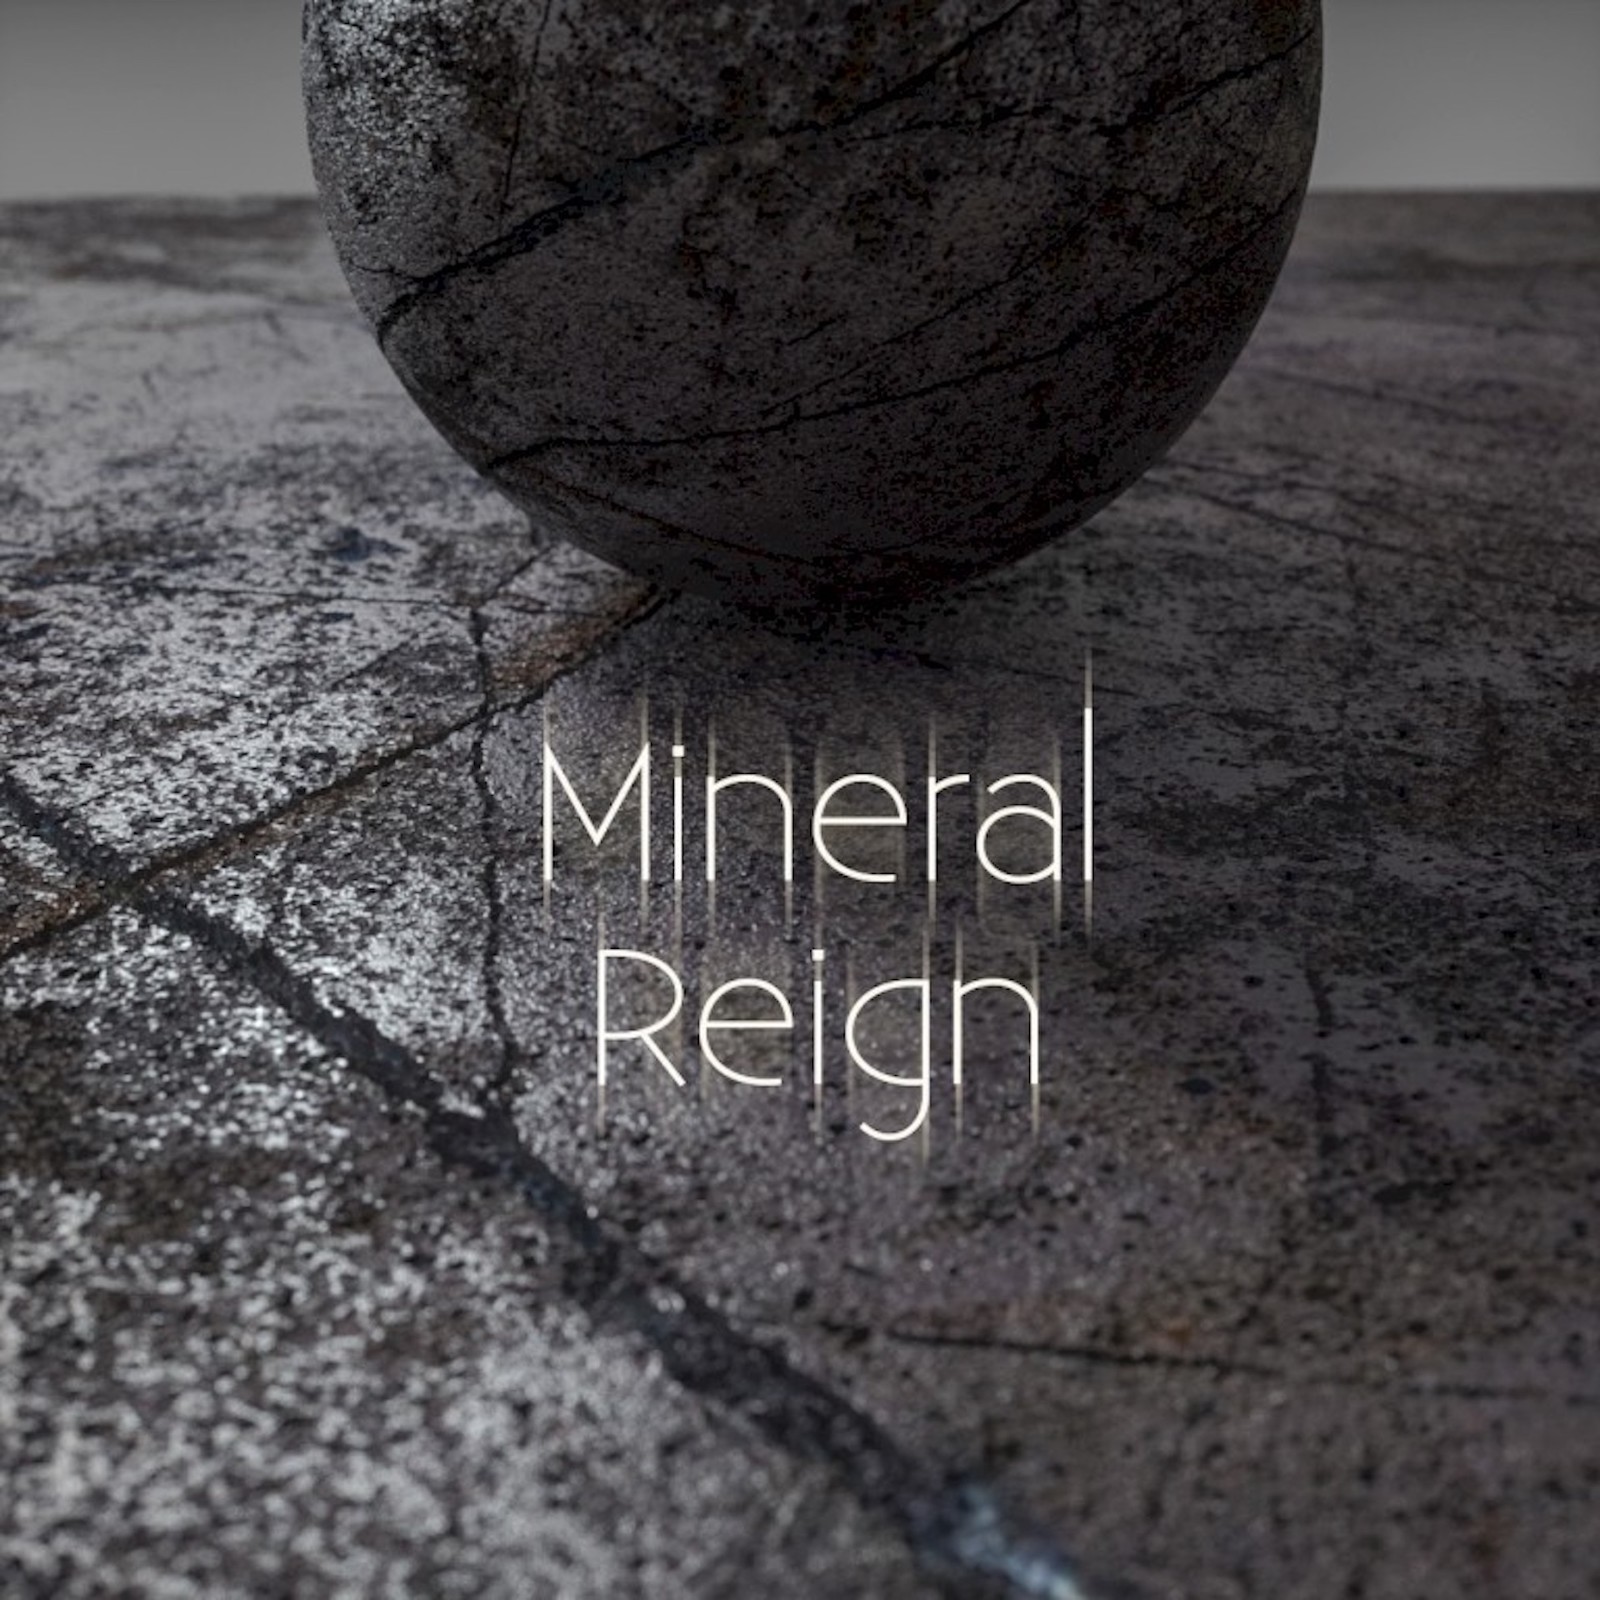 Mineral reign (sconto incluso)